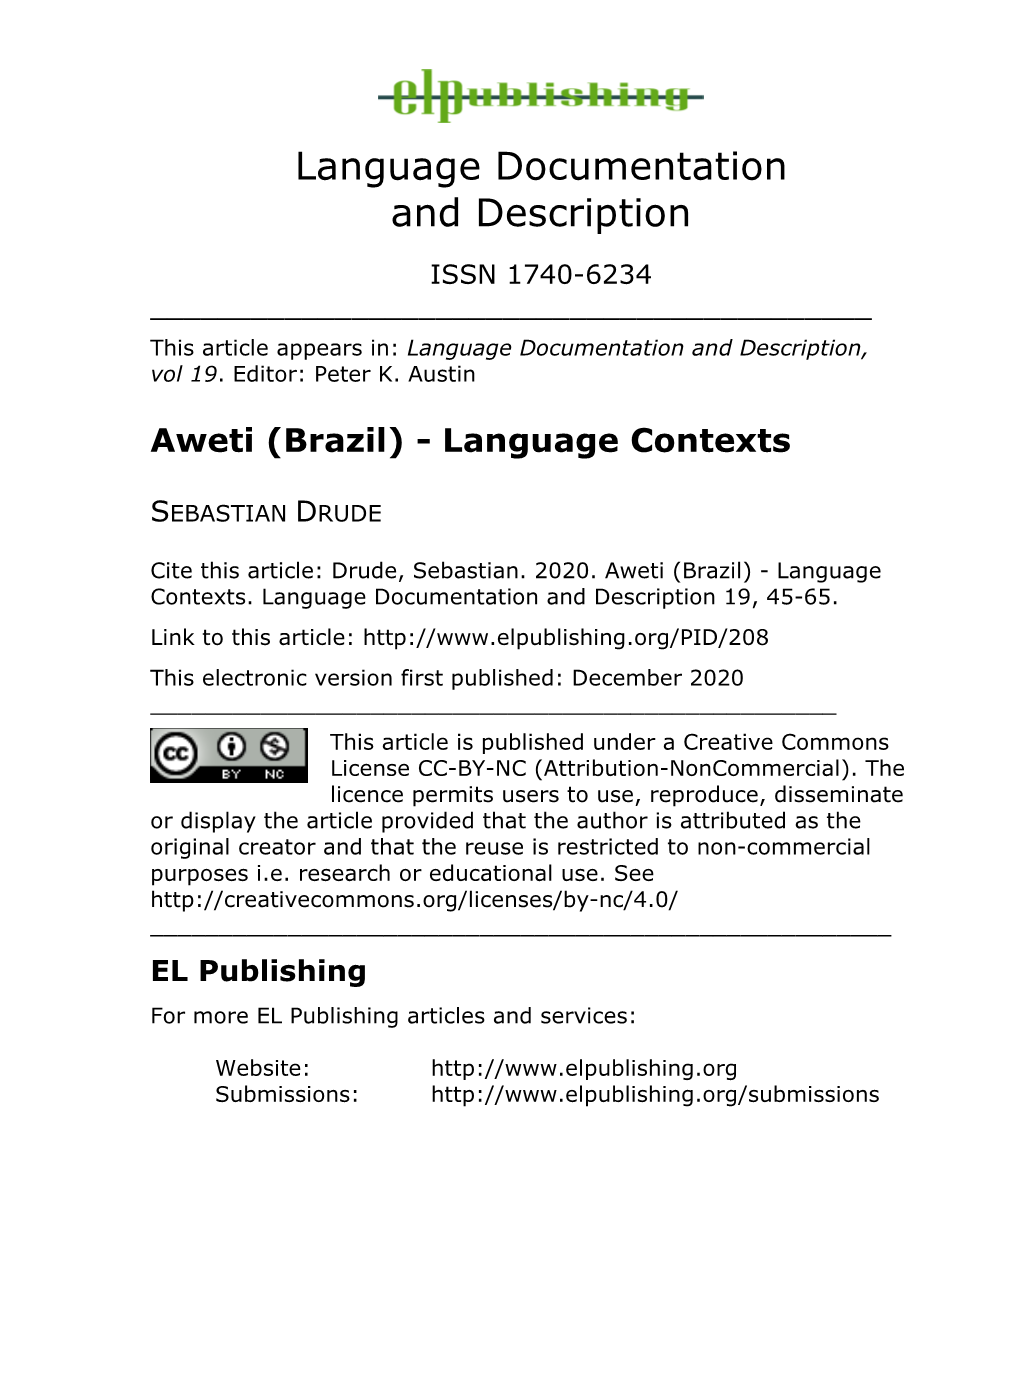 Aweti (Brazil) - Language Contexts